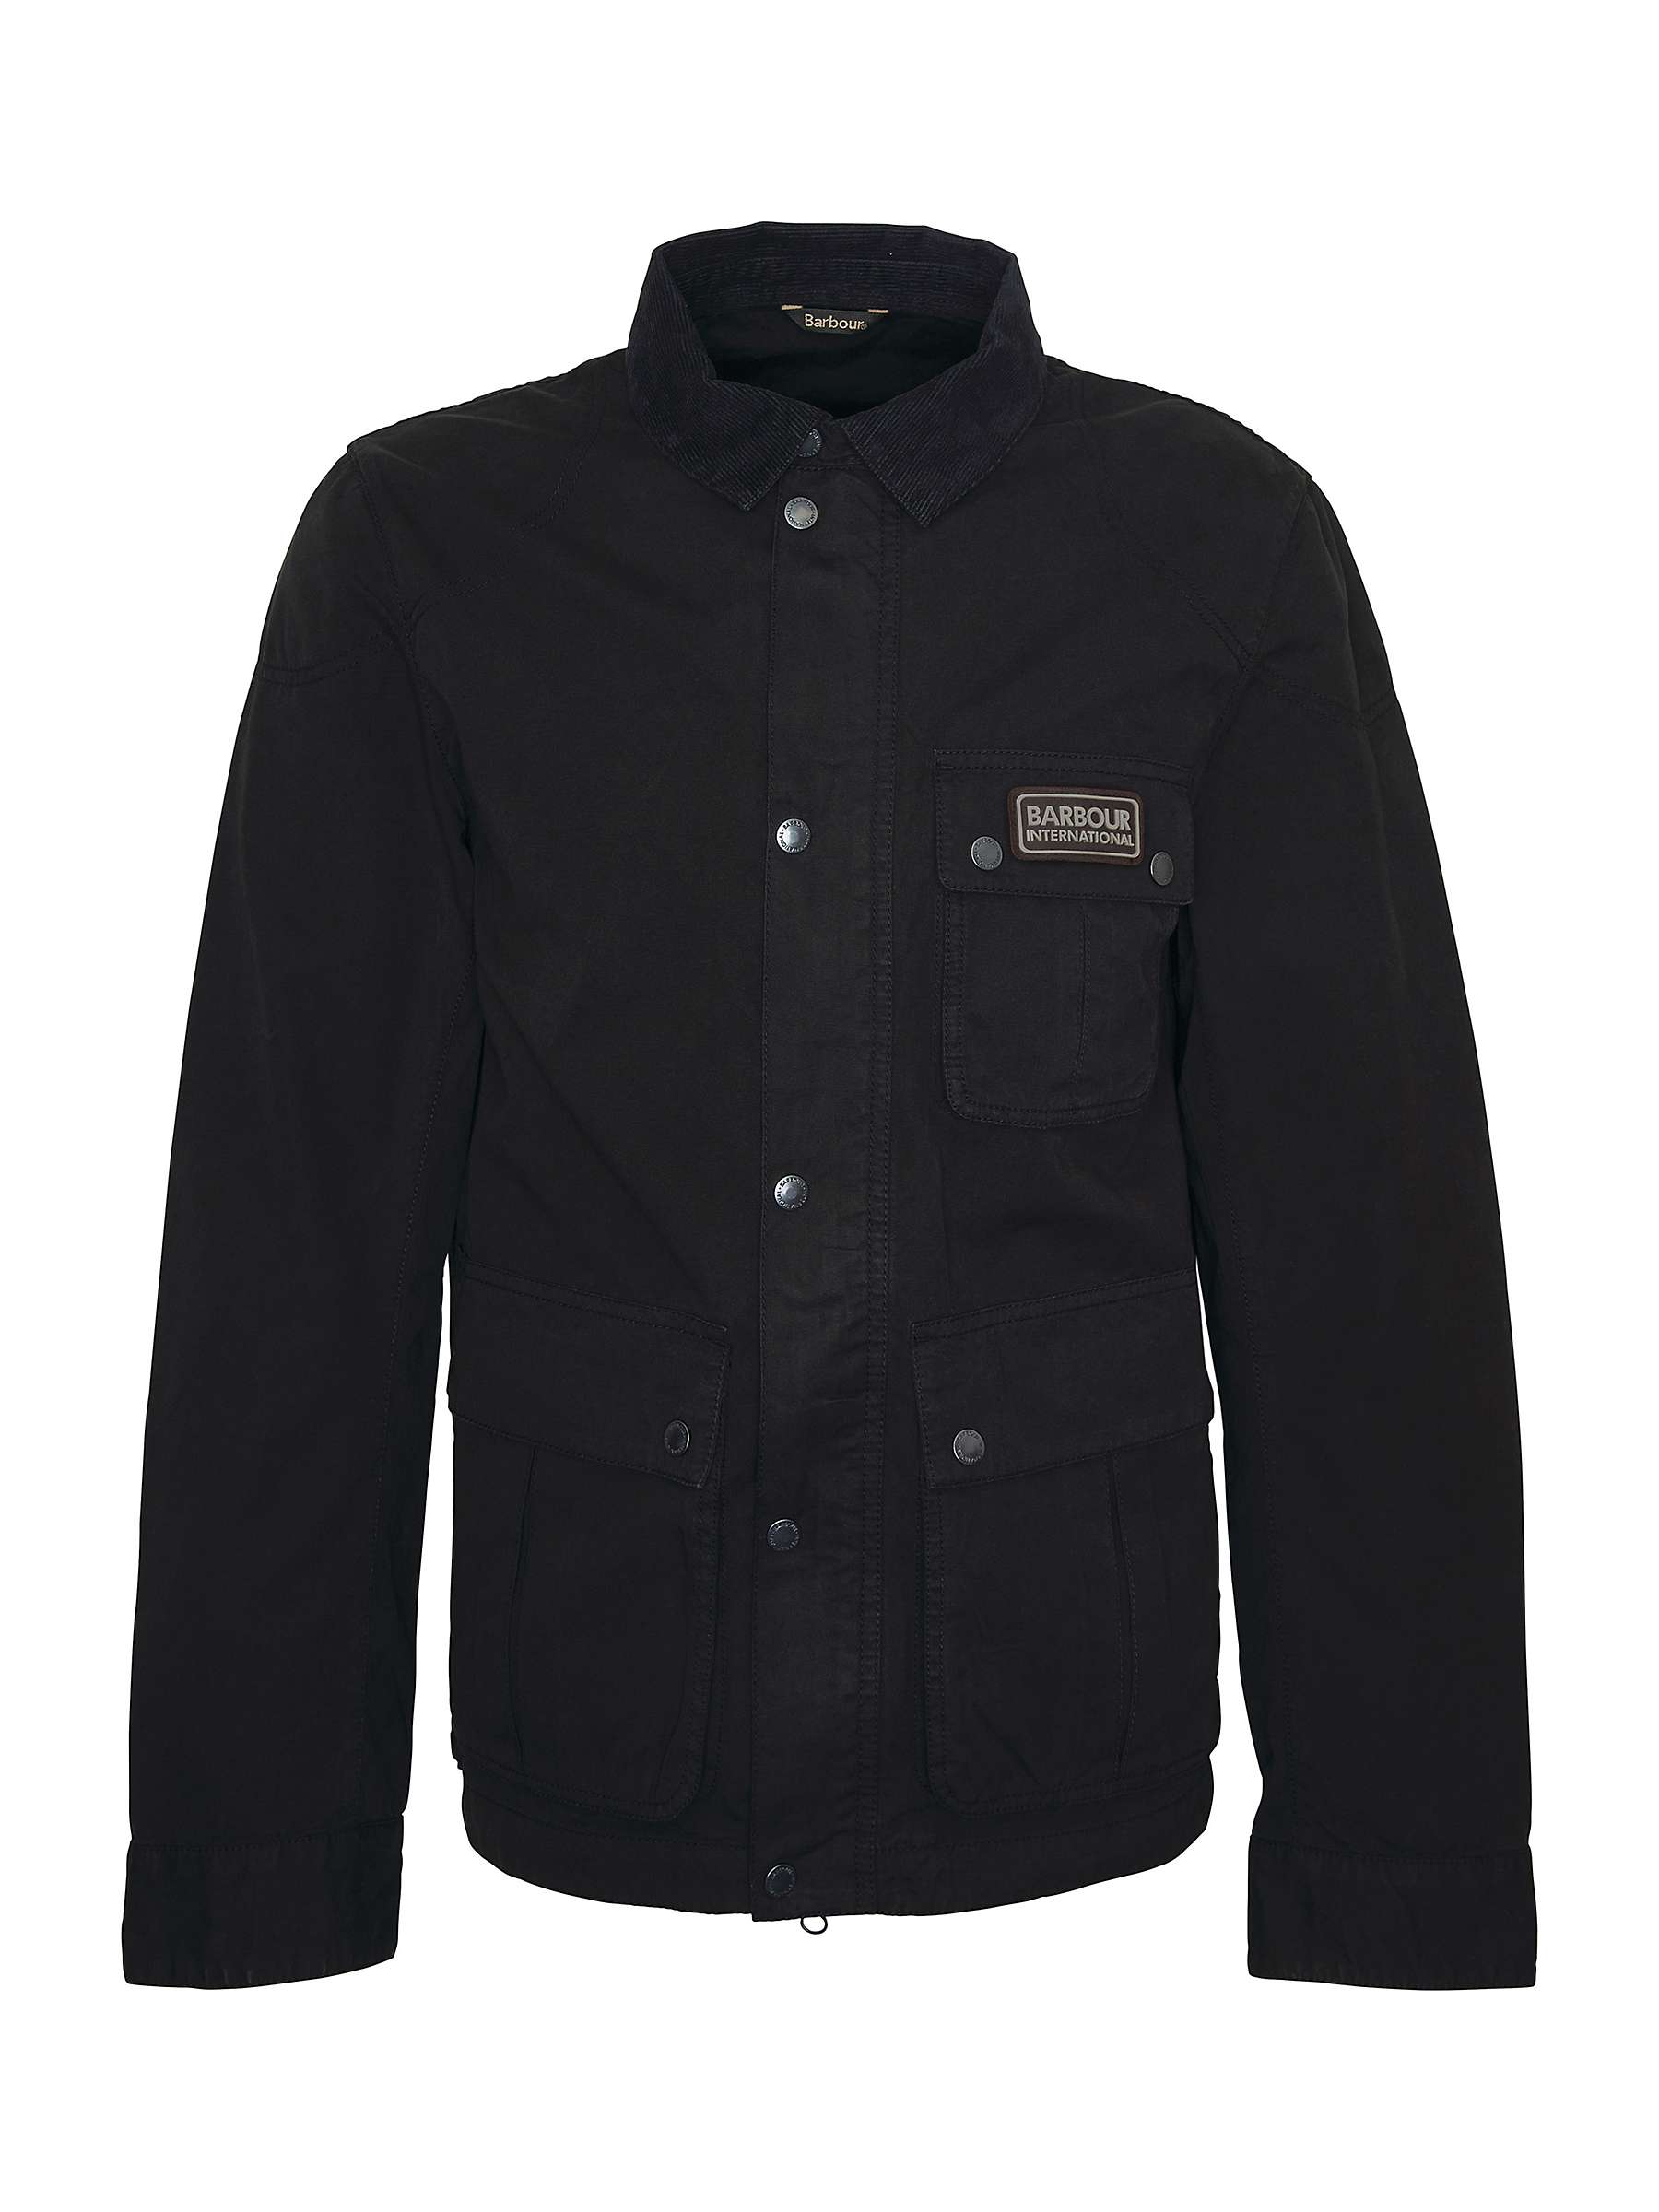 Buy Barbour International Tourer Barwell Casual Jacket, Black Online at johnlewis.com